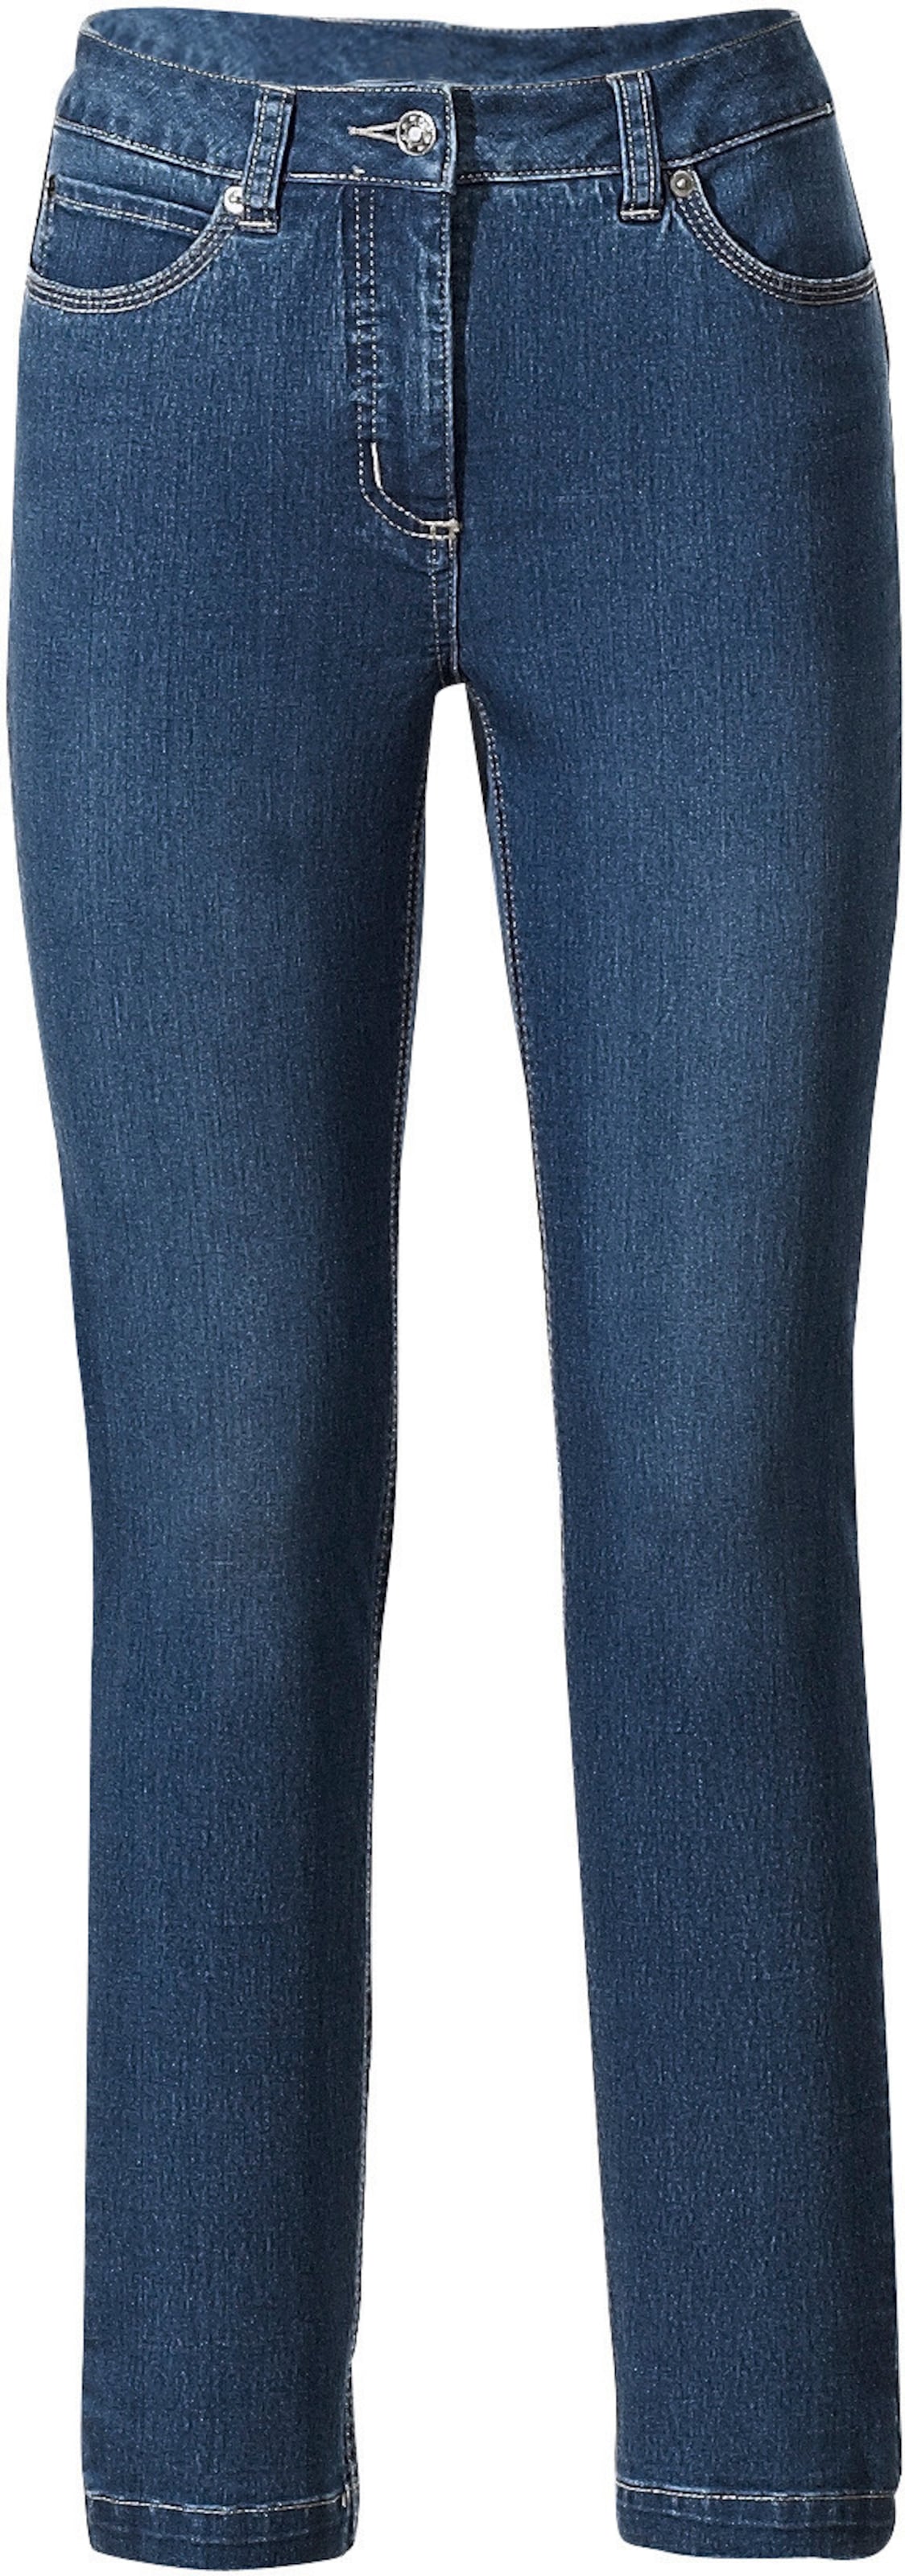 Bauchweg-Jeans in blue stone von Ashley Brooke